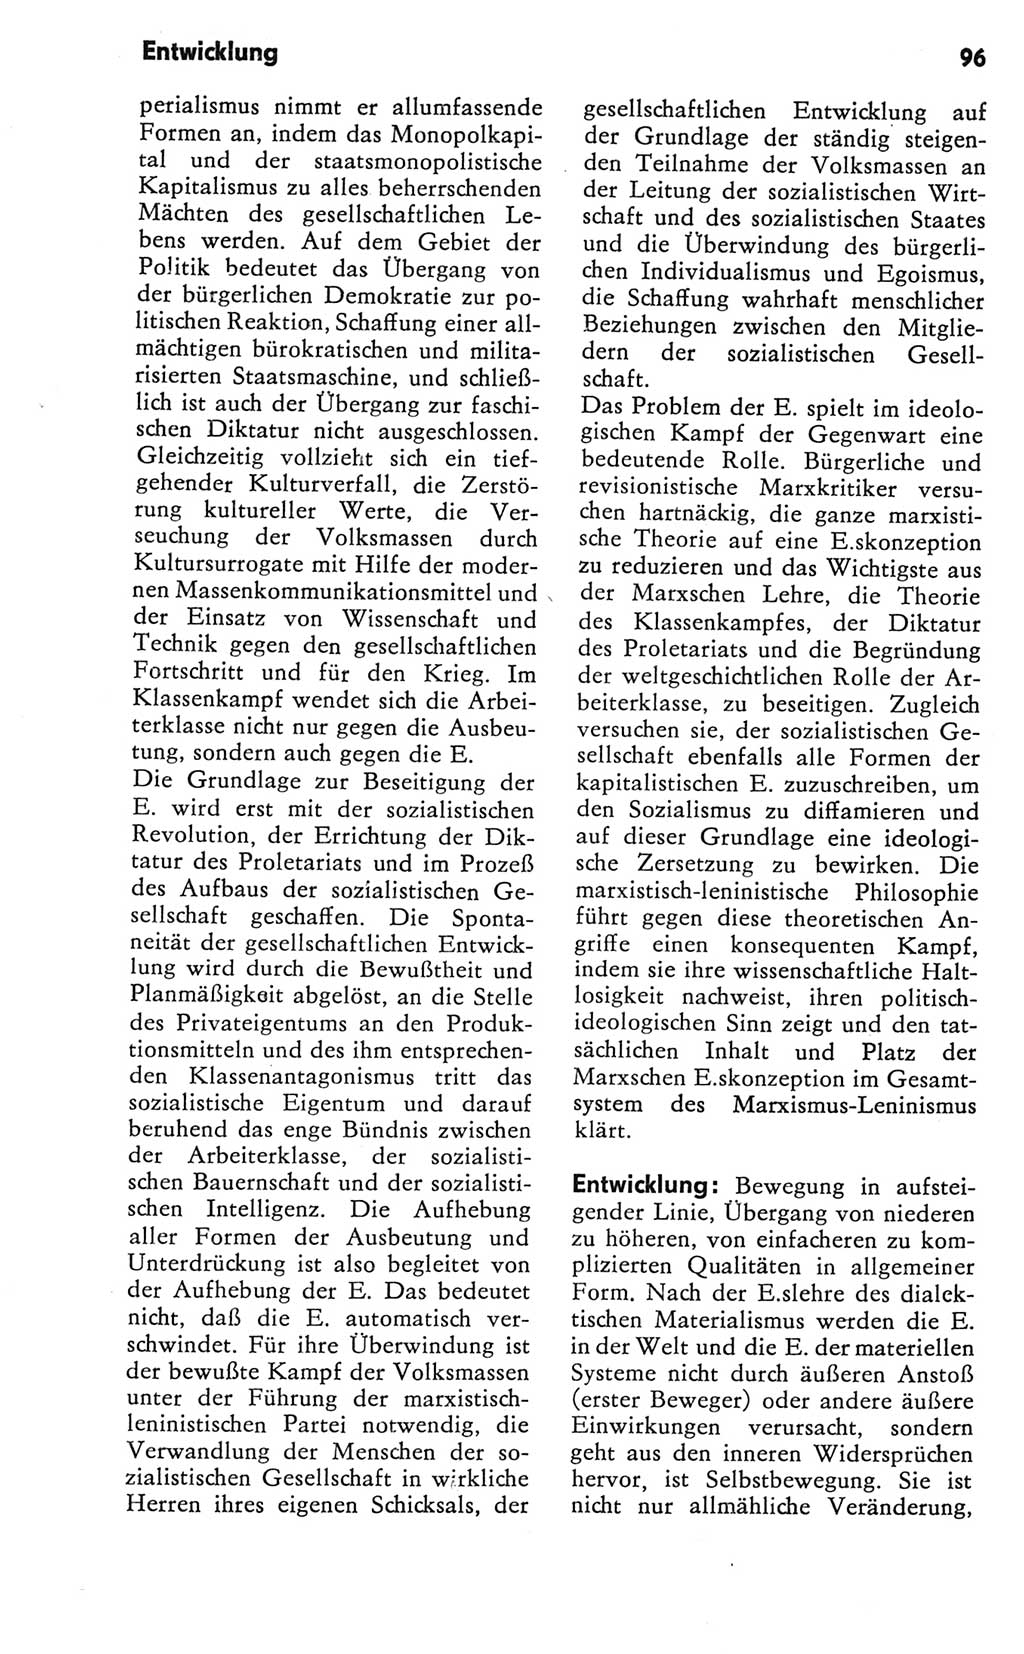 Kleines Wörterbuch der marxistisch-leninistischen Philosophie [Deutsche Demokratische Republik (DDR)] 1981, Seite 96 (Kl. Wb. ML Phil. DDR 1981, S. 96)